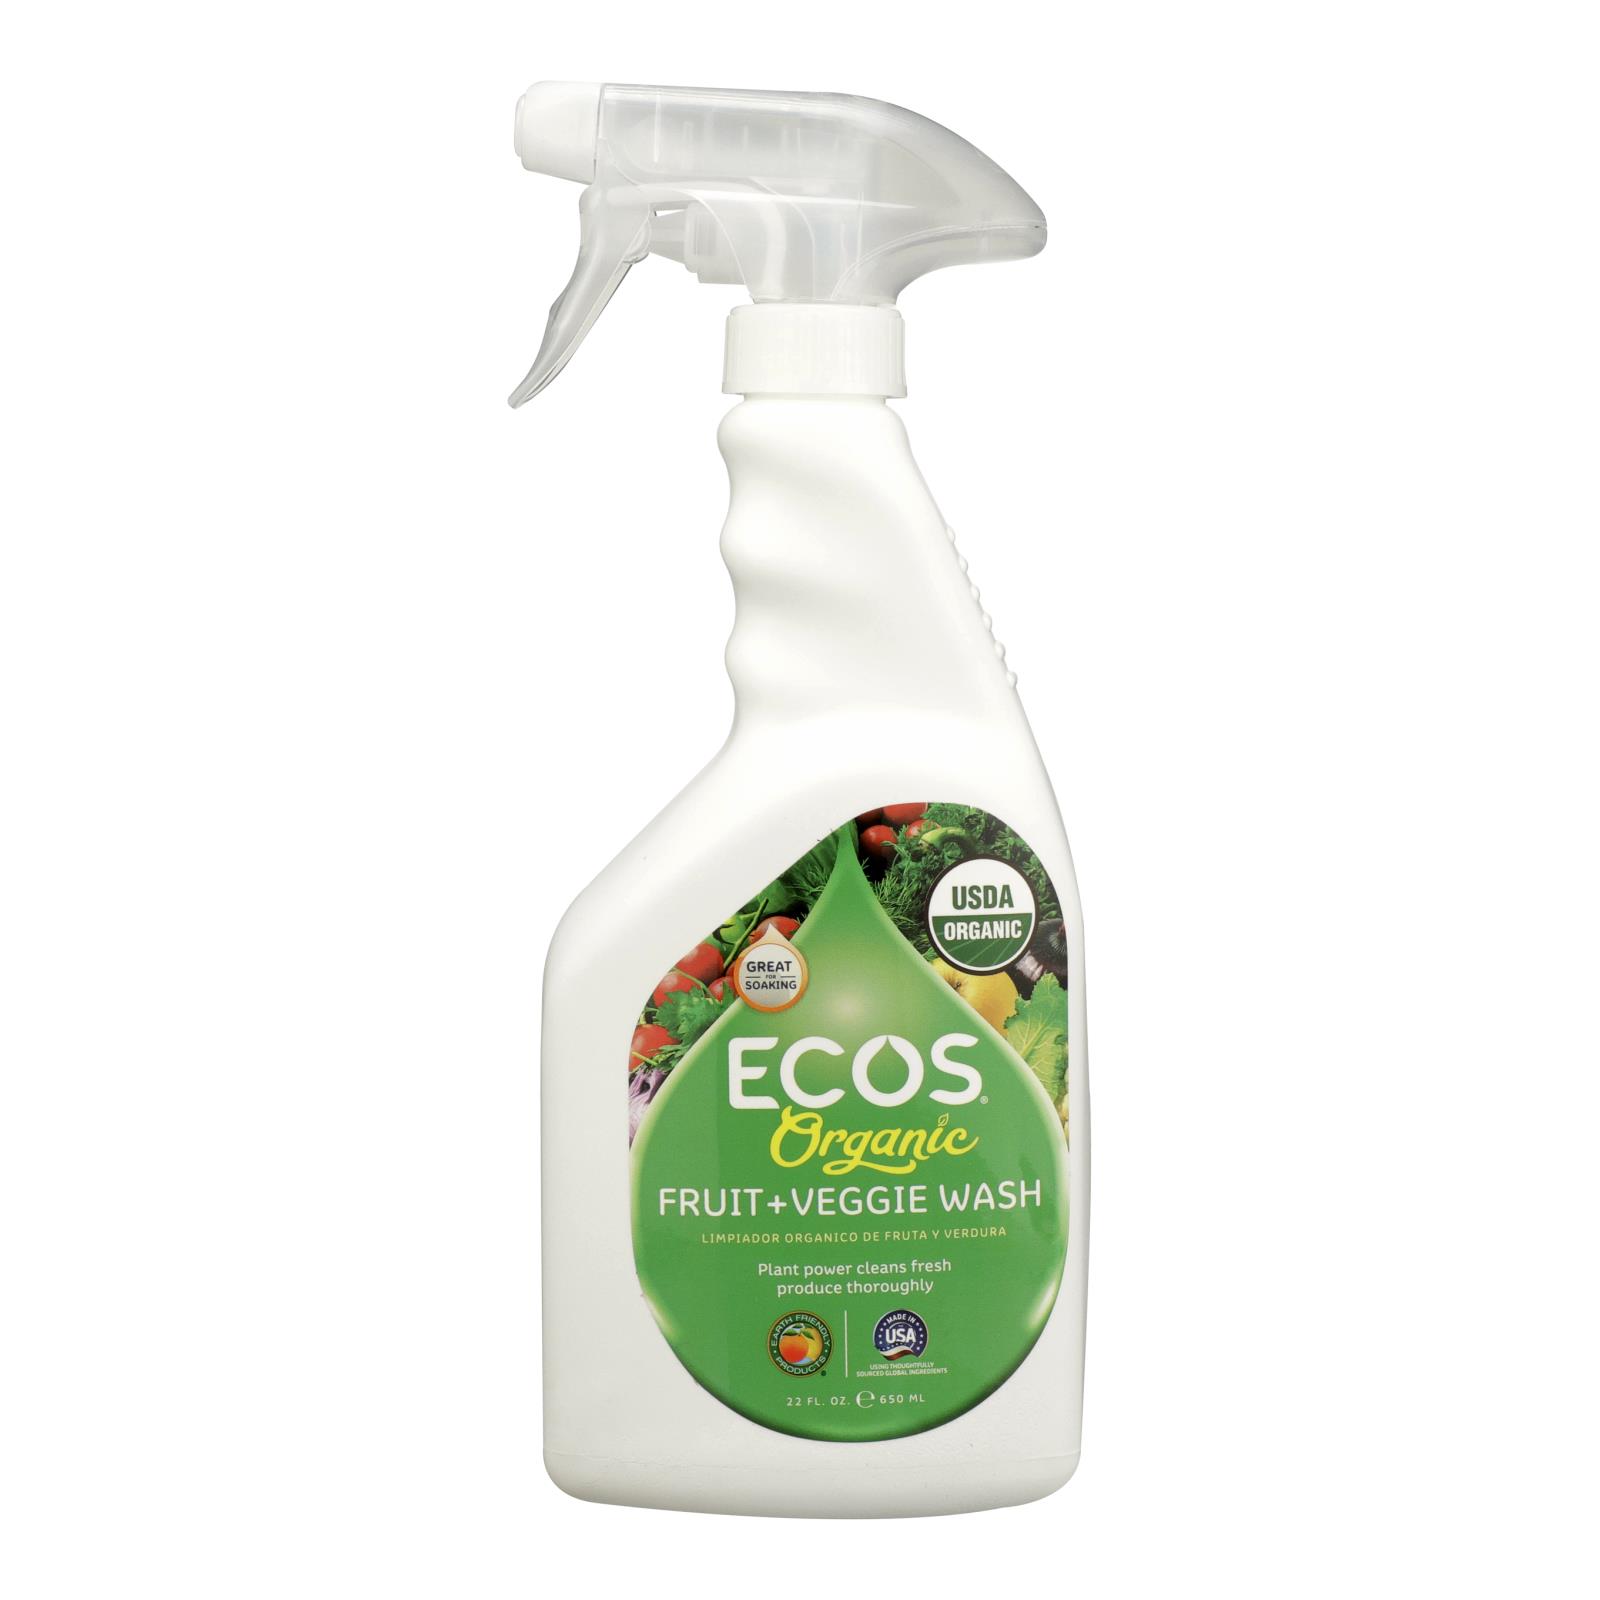 Ecos - Spray Fruit Veggie Wash - 6개 묶음상품 - 22 FZ